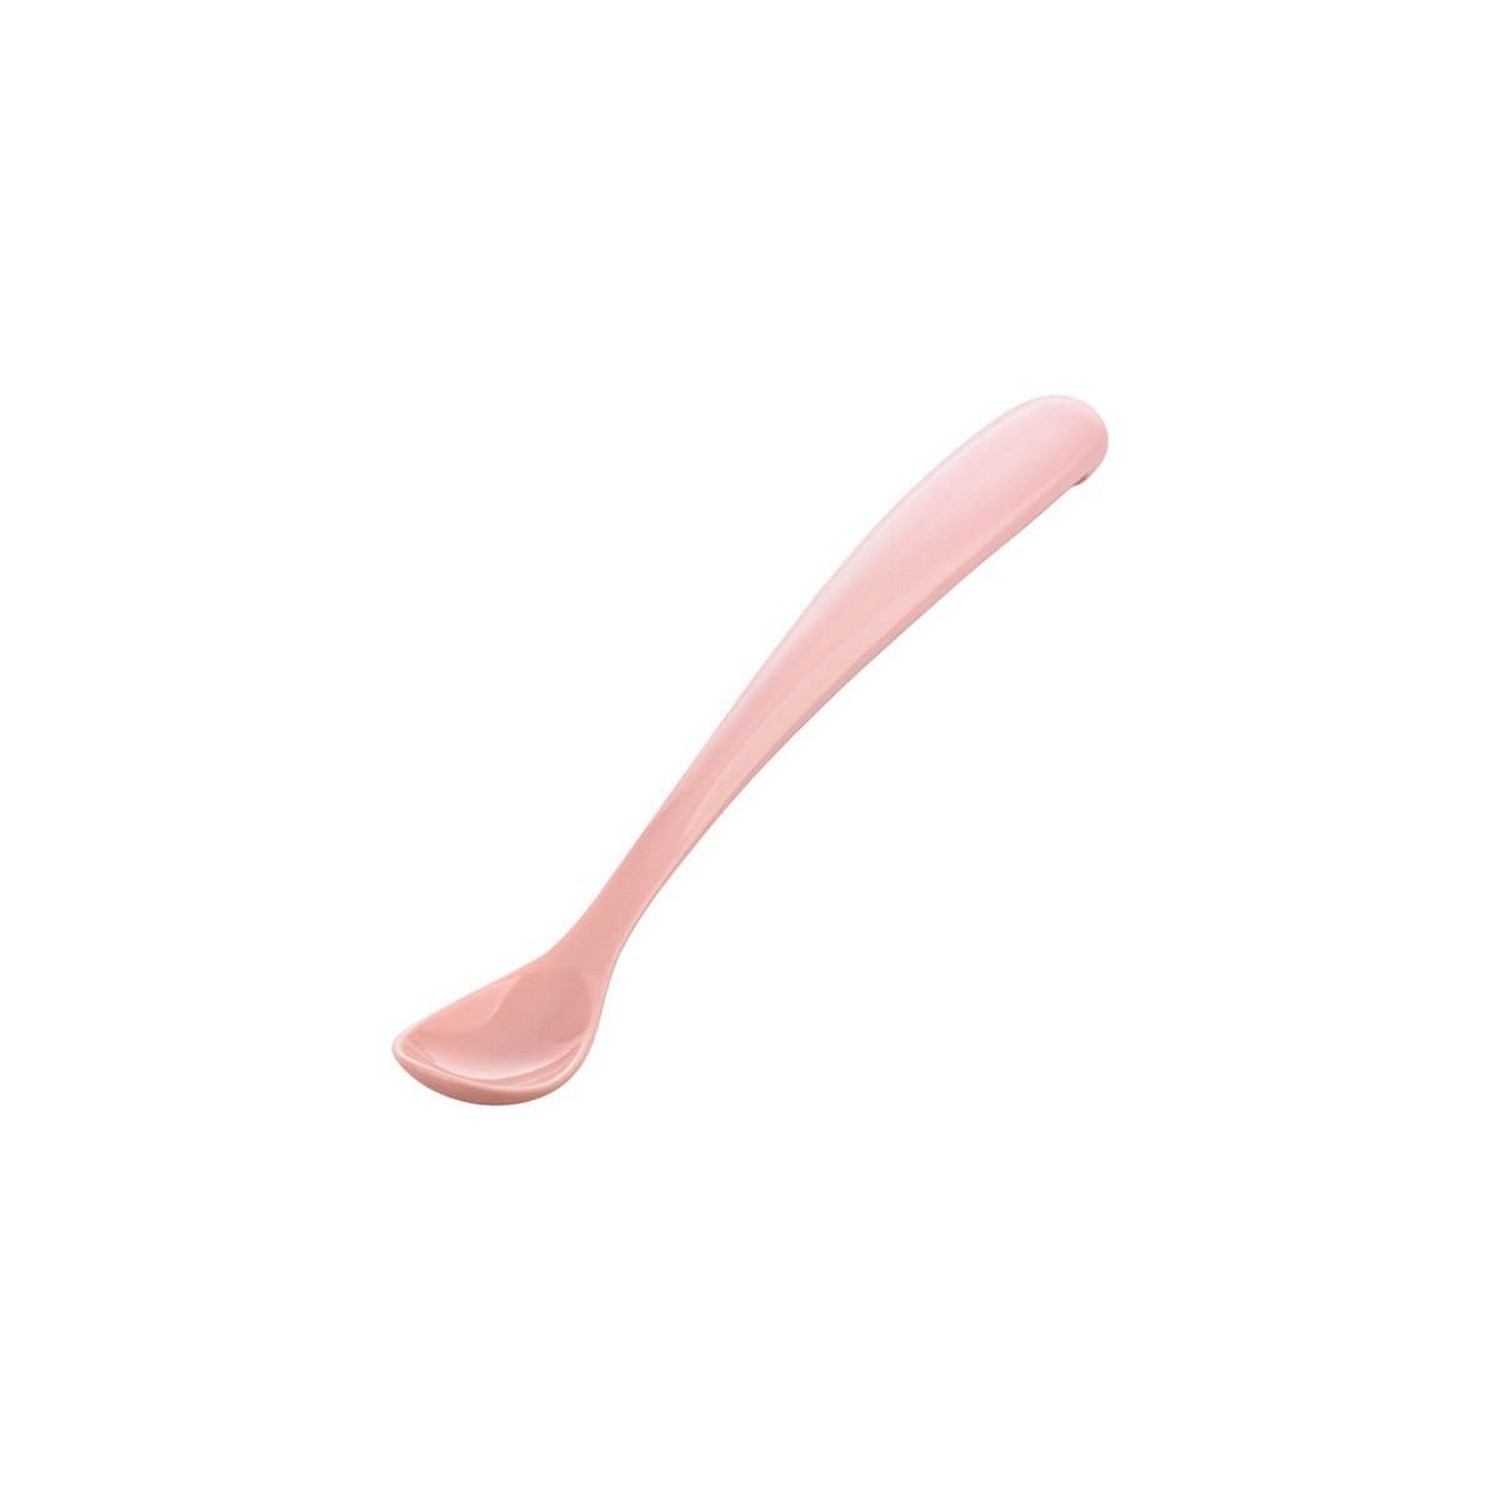 Mamajoo 2'li Beslenme Kaşığı   Saklama Kutusu Powder Pink